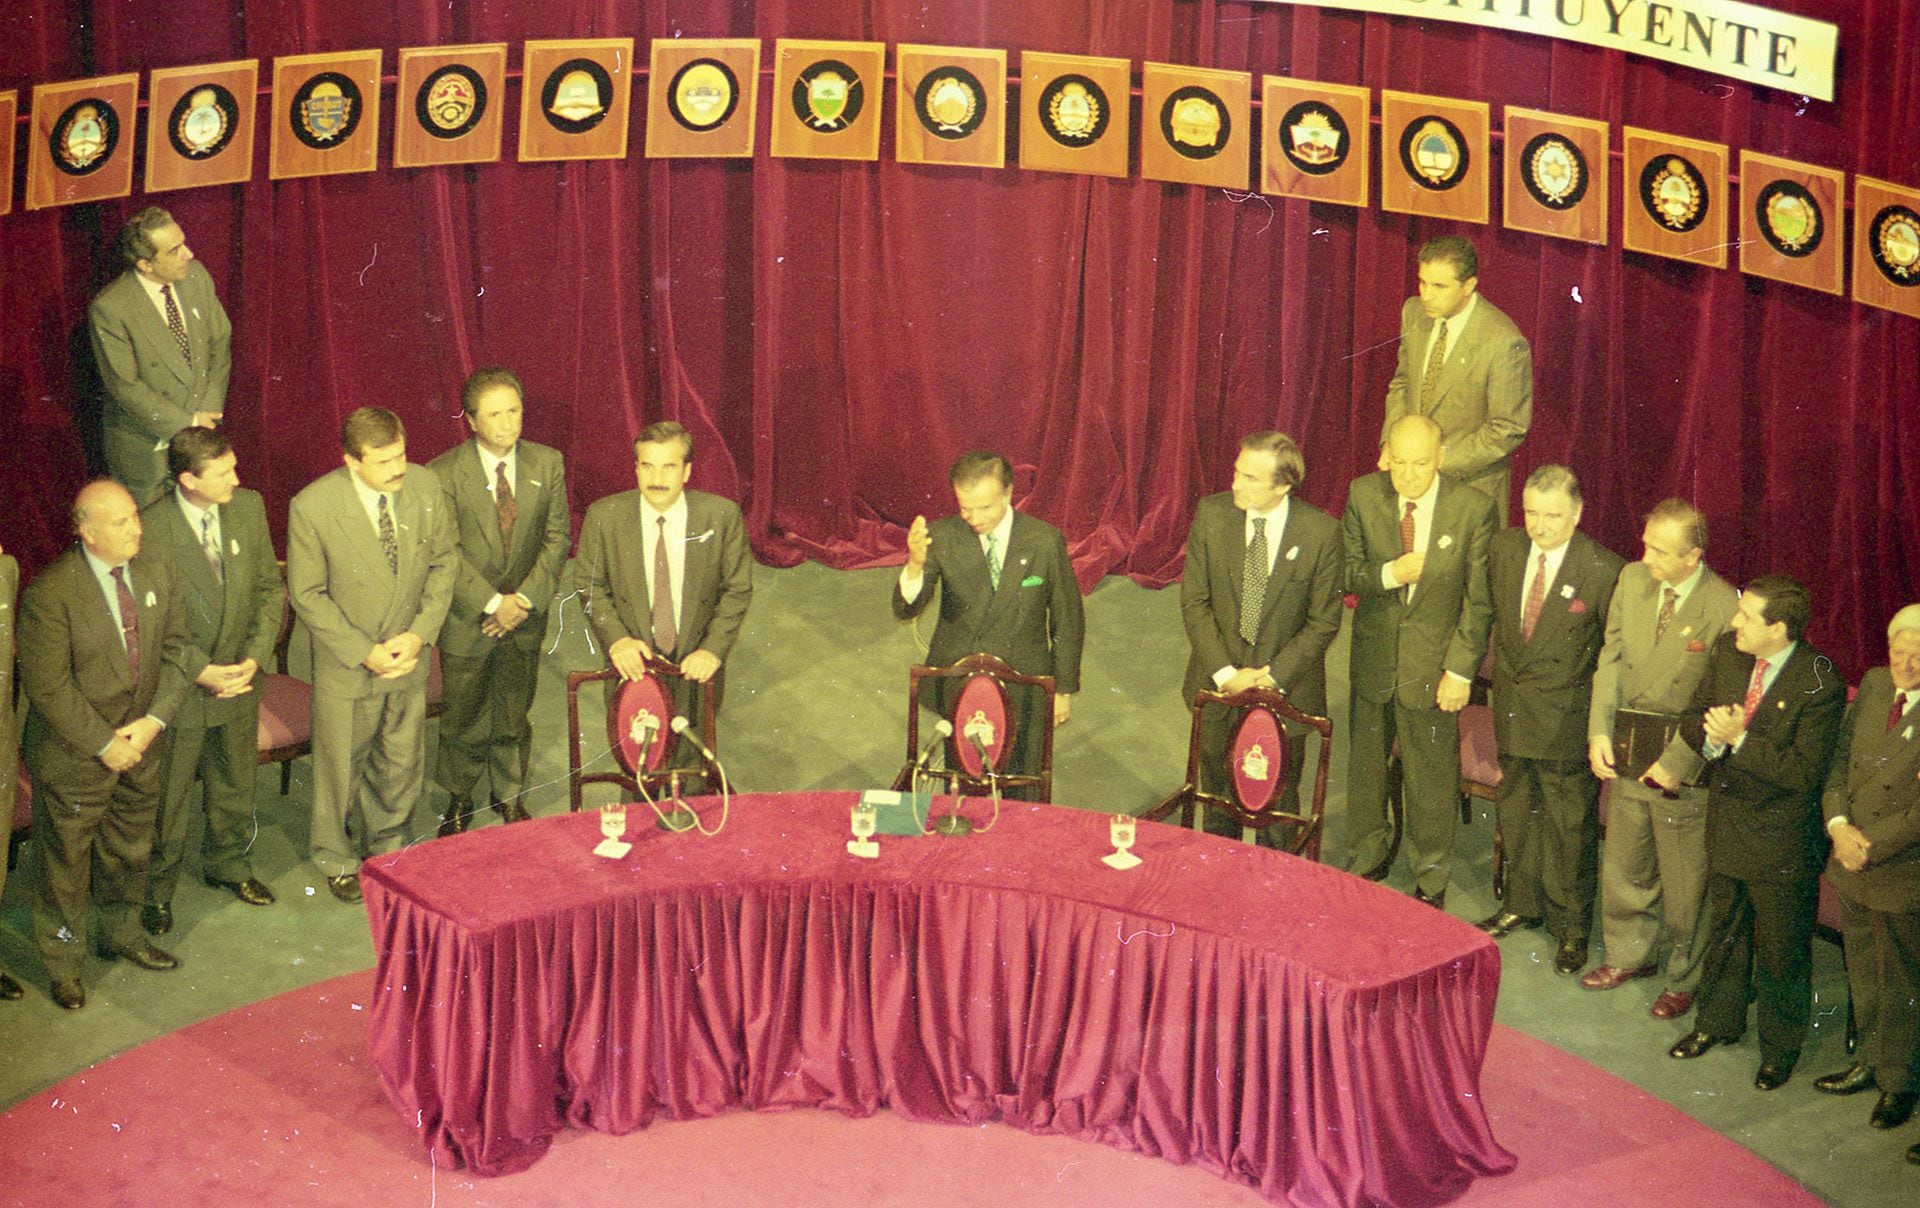 El presidente Carlos Menem saluda en la finalización de la Asamblea Constituyente en 1994. Foto: Carlos Luna